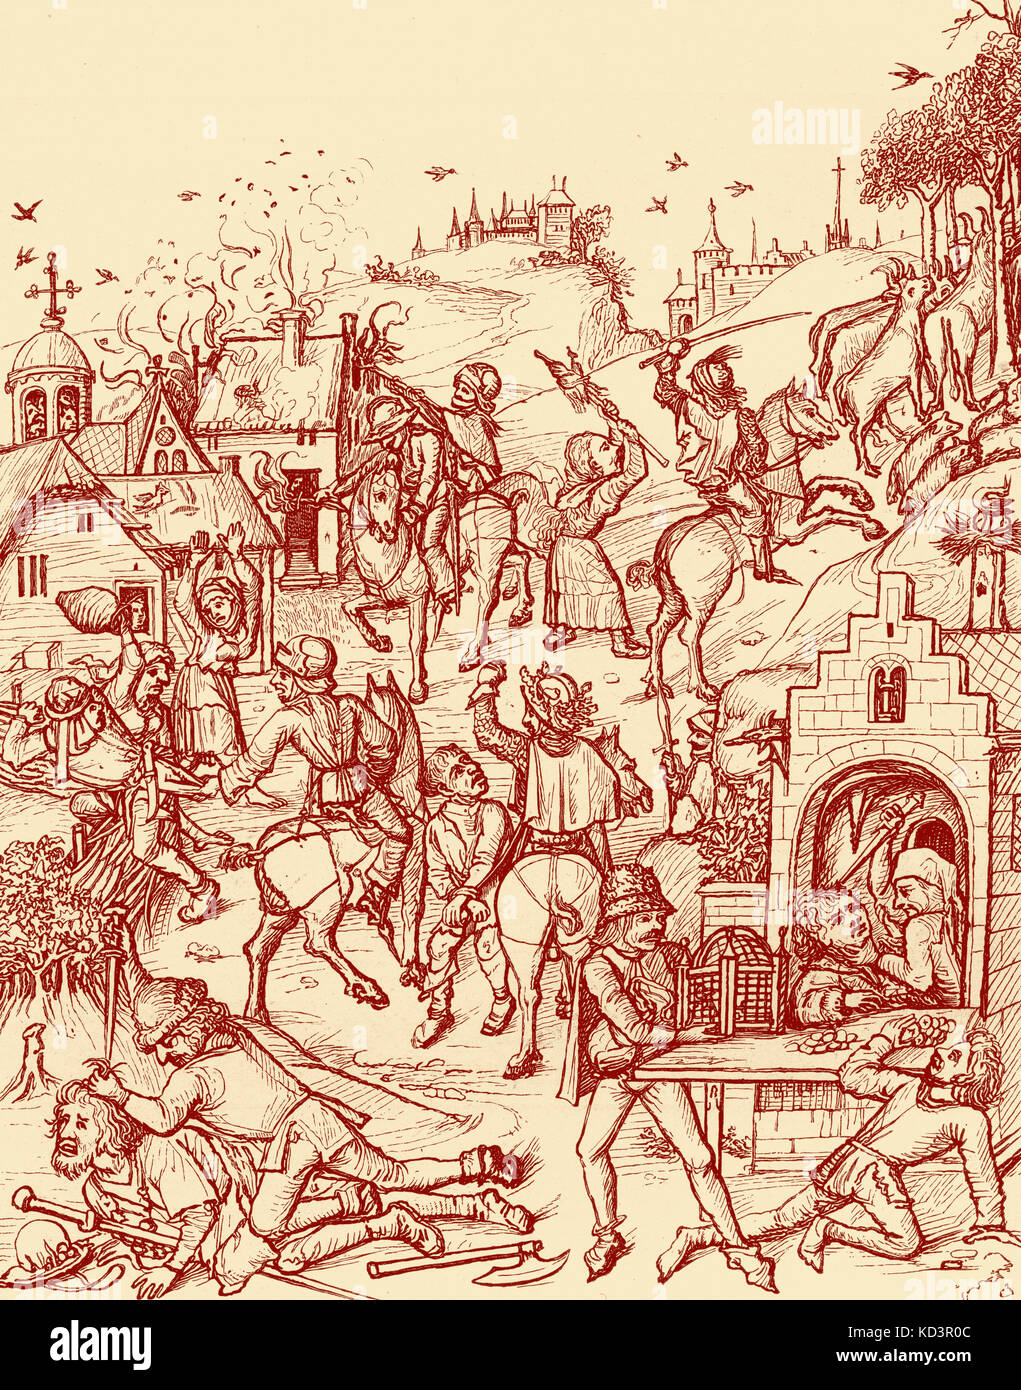 Plünderung eines mittelalterlichen deutschen Dorfes durch ein Raubritter - feudalen Landbesitzer Rückgriff auf Banditentum, geschützt durch seine Rechtsstellung, um finanzielle Schwierigkeiten, 15. Jahrhundert Abbildung zu lindern Stockfoto